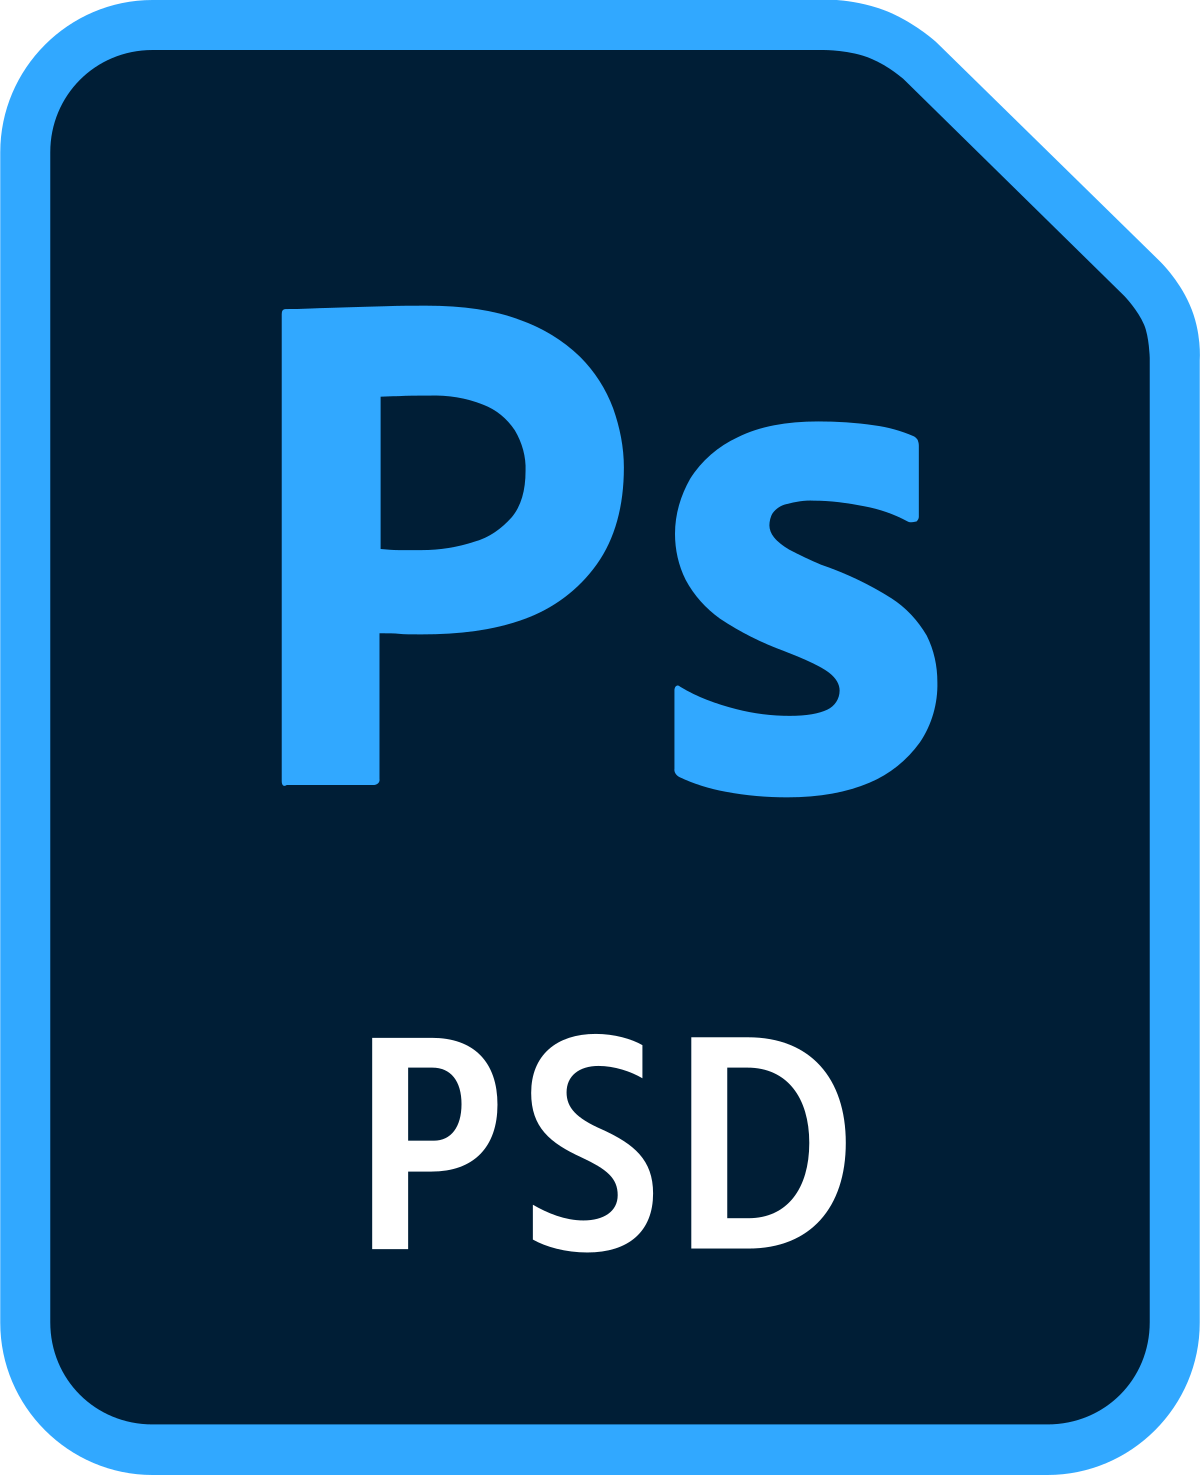 Псд 2. ПСД файл. Формат значок. PSD файл. Иконка ПСД.